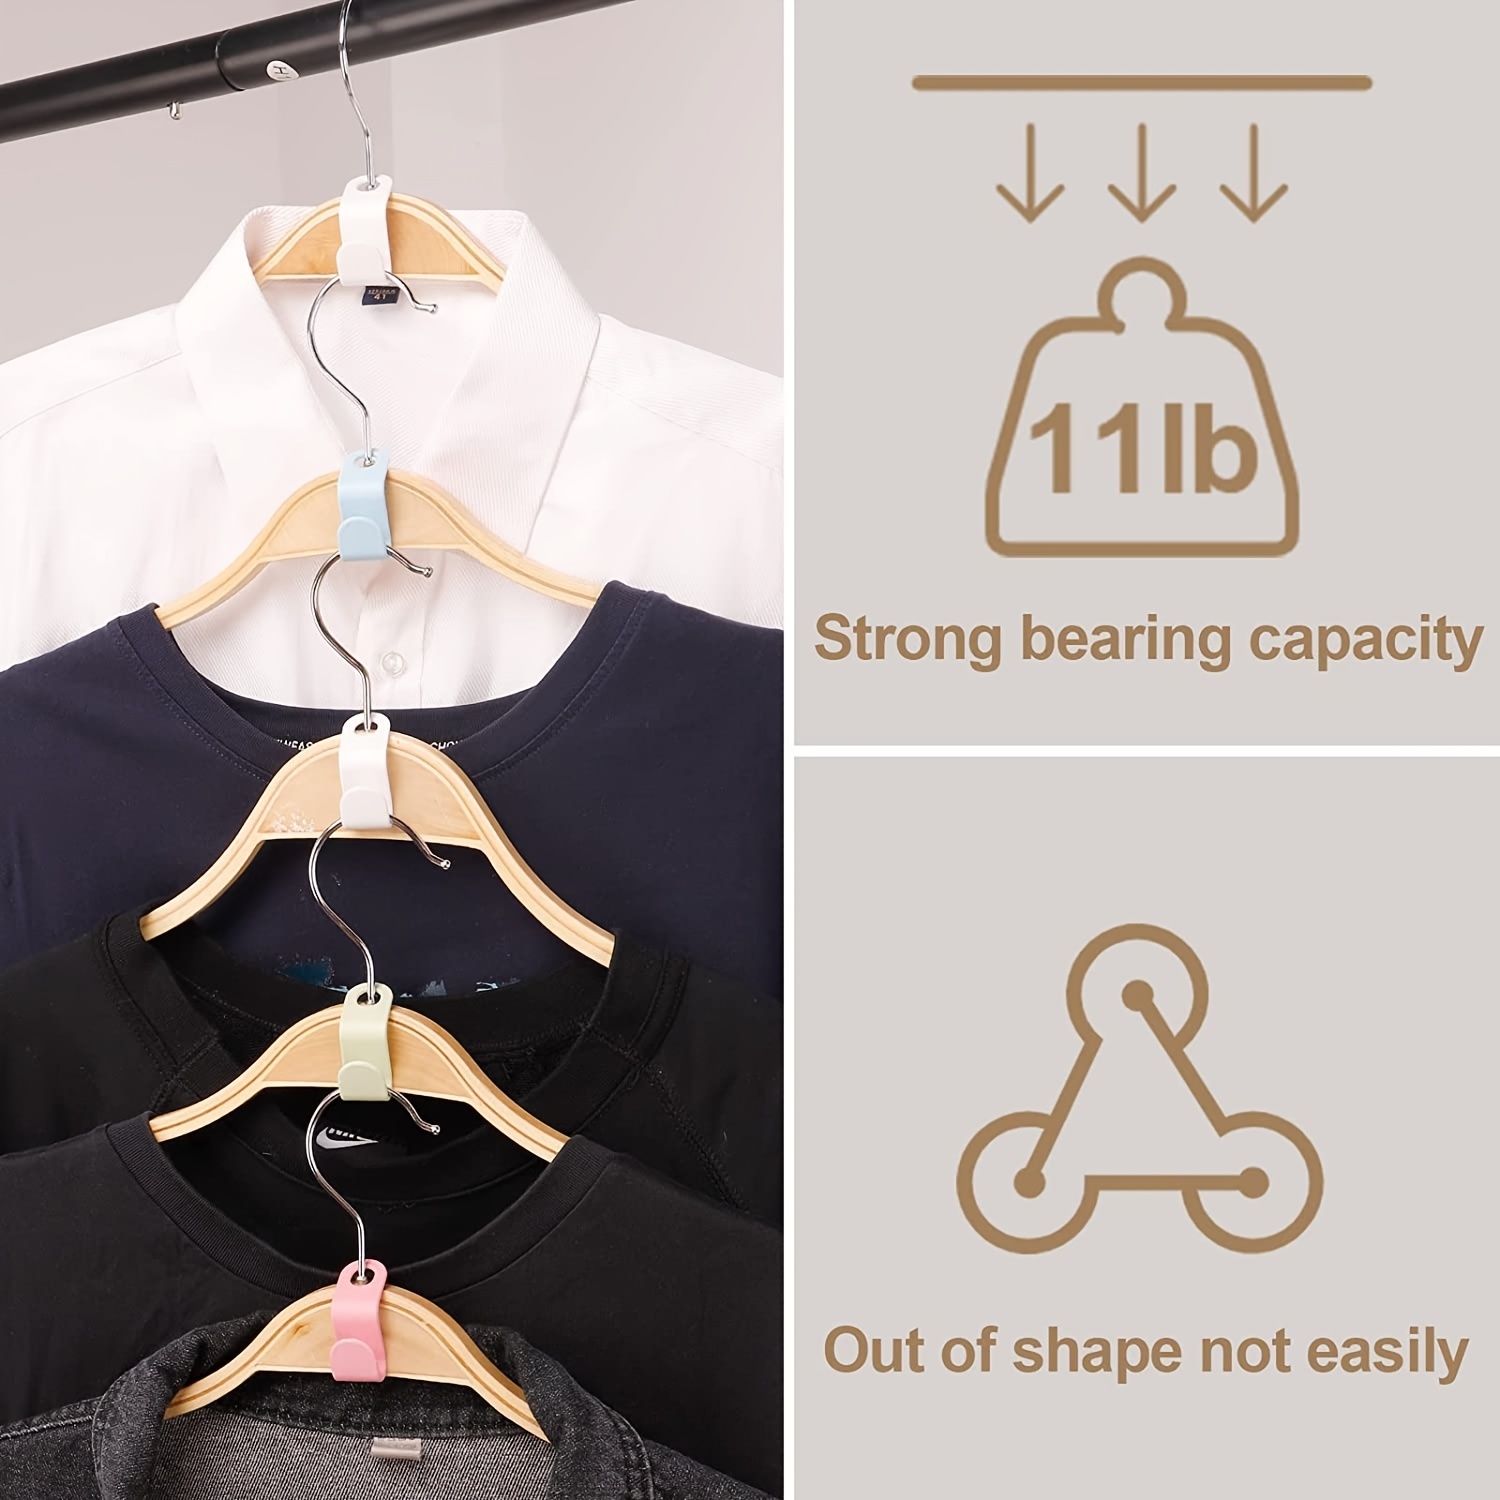  Geilihome Clothes Hanger Connector Hooks, 60PCS